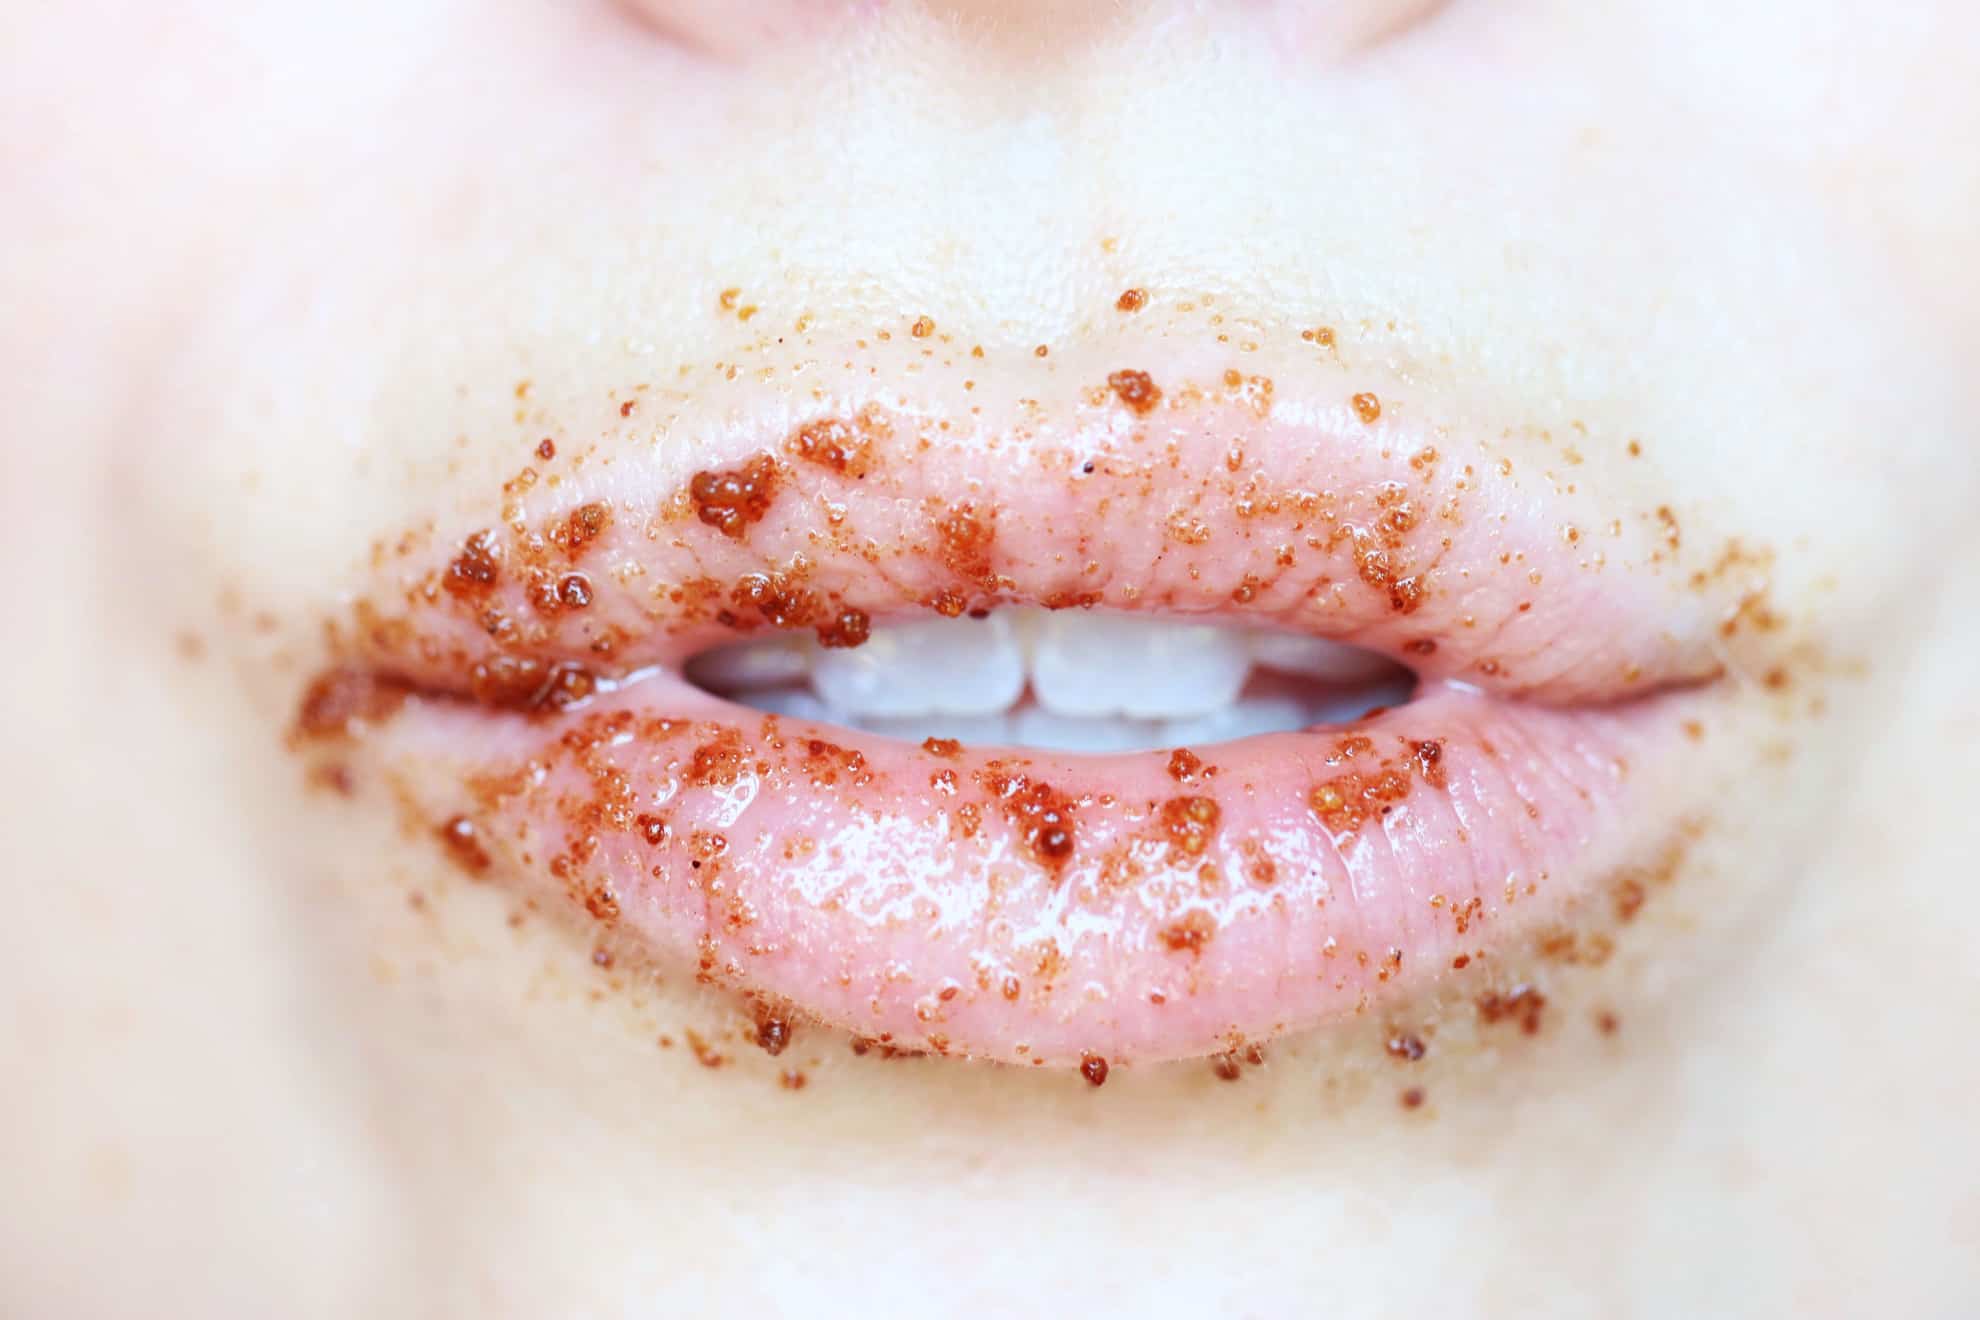 lips with brown sugar diy lip scrub on them